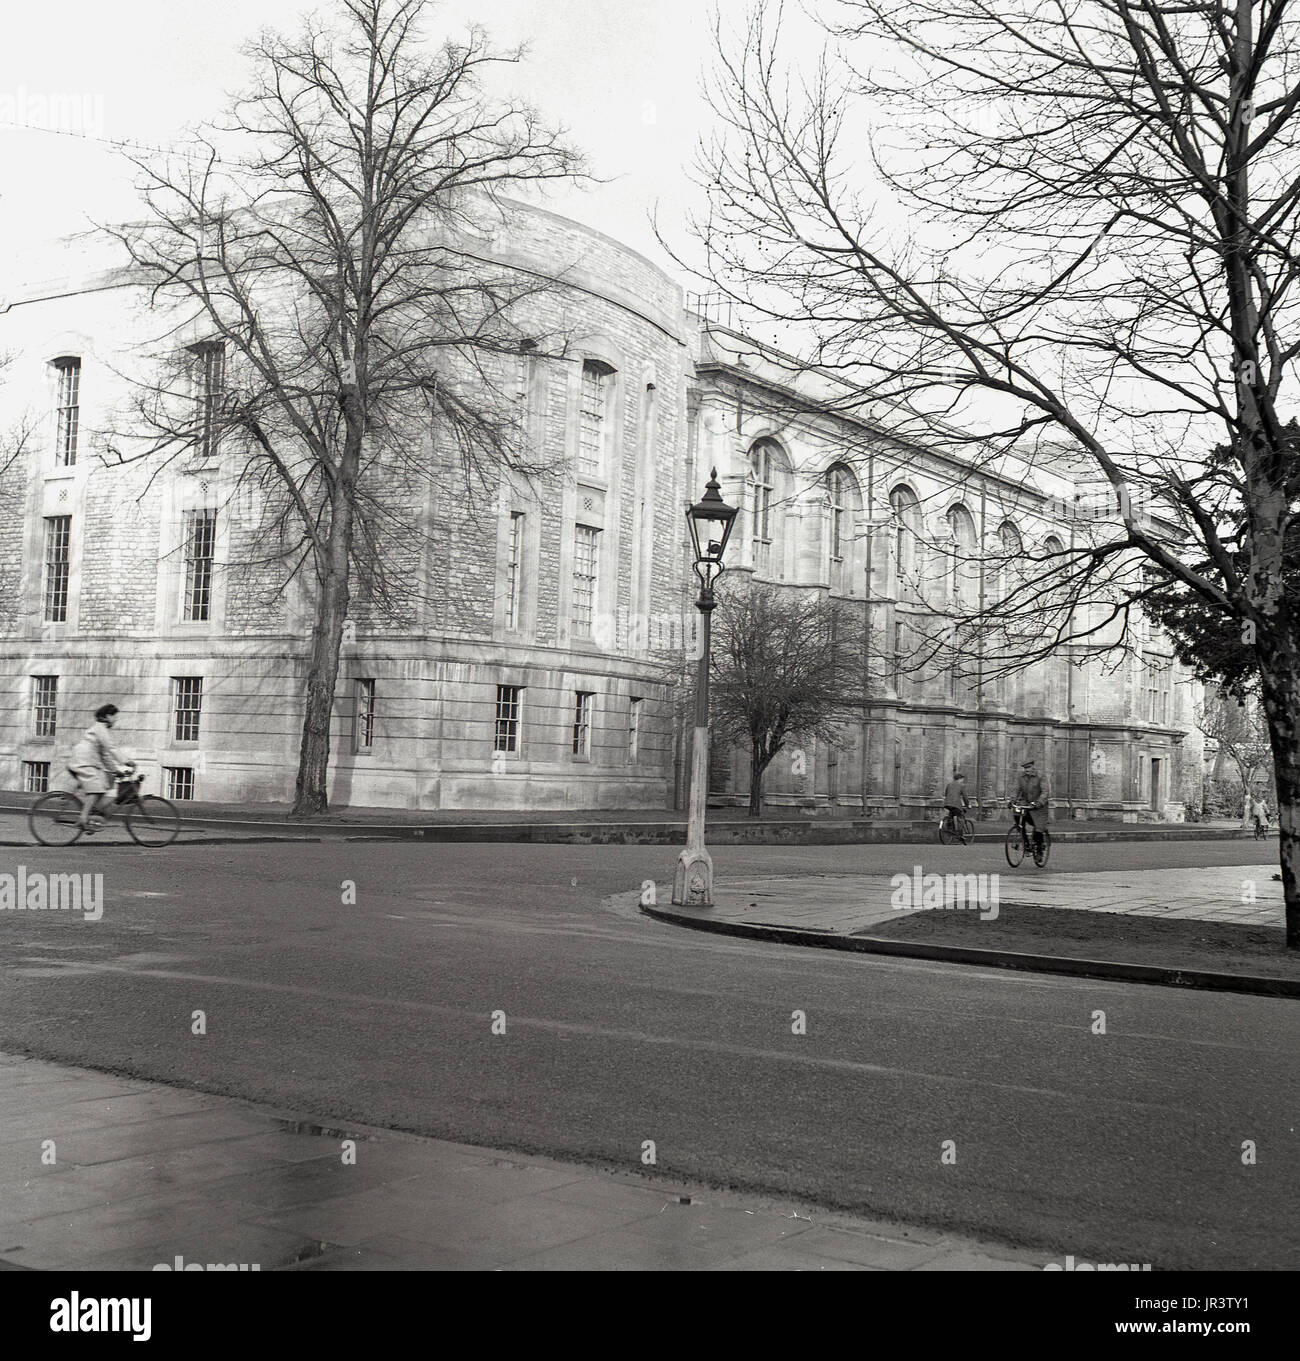 1948, storico, immagine esterna del Radcliffe Scienza biblioteca dell'Università di Oxford, Oxford, Inghilterra, Regno Unito, mostrando il sud-occidentale guardando verso est dalla giunzione a parchi Rd. Foto Stock